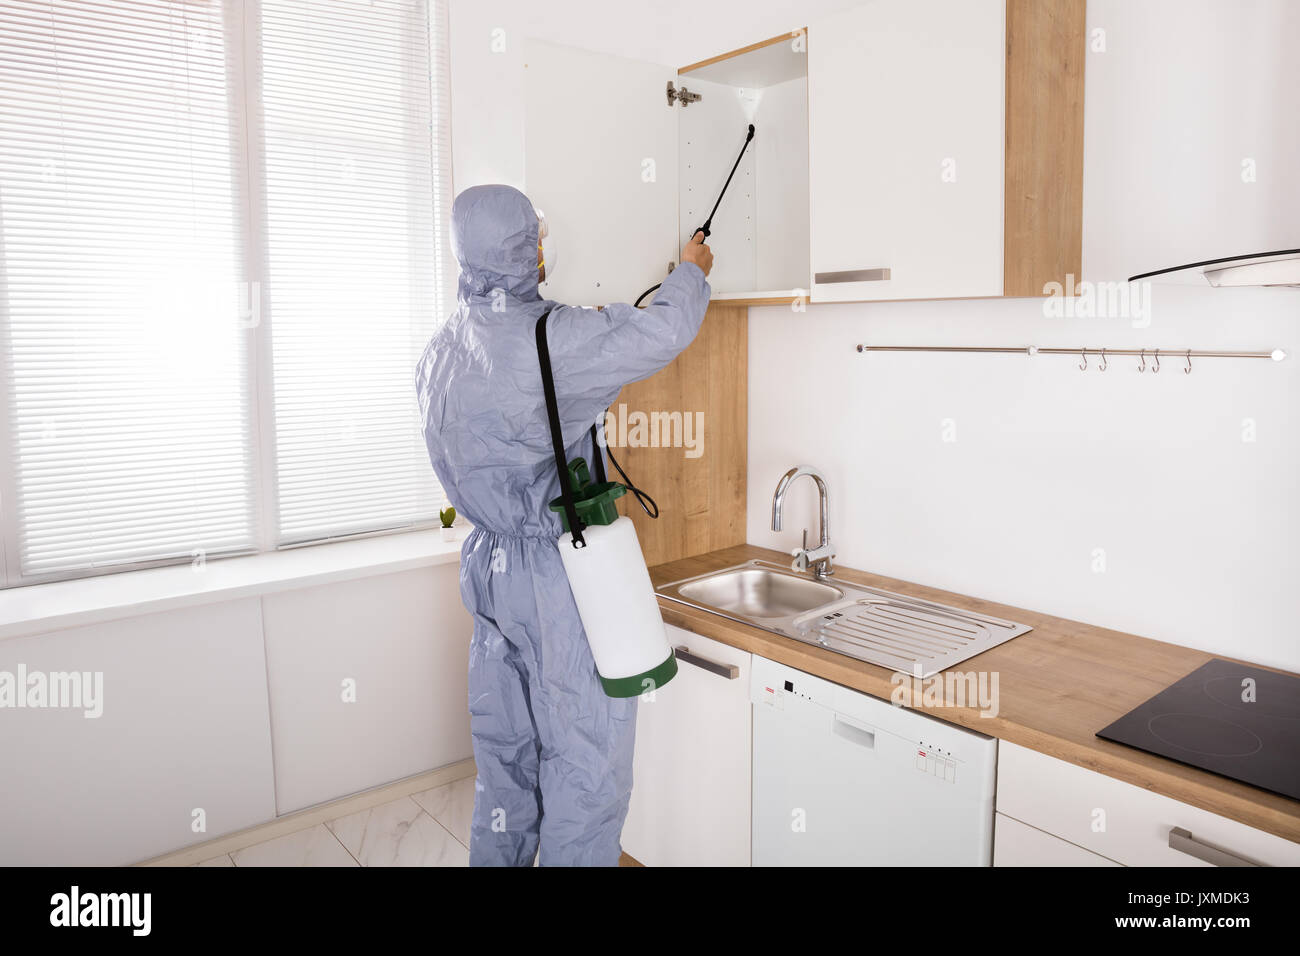 Trabajador de control de plagas en ropa de trabajo de fumigar con pesticidas en la estantería en la cocina Foto de stock